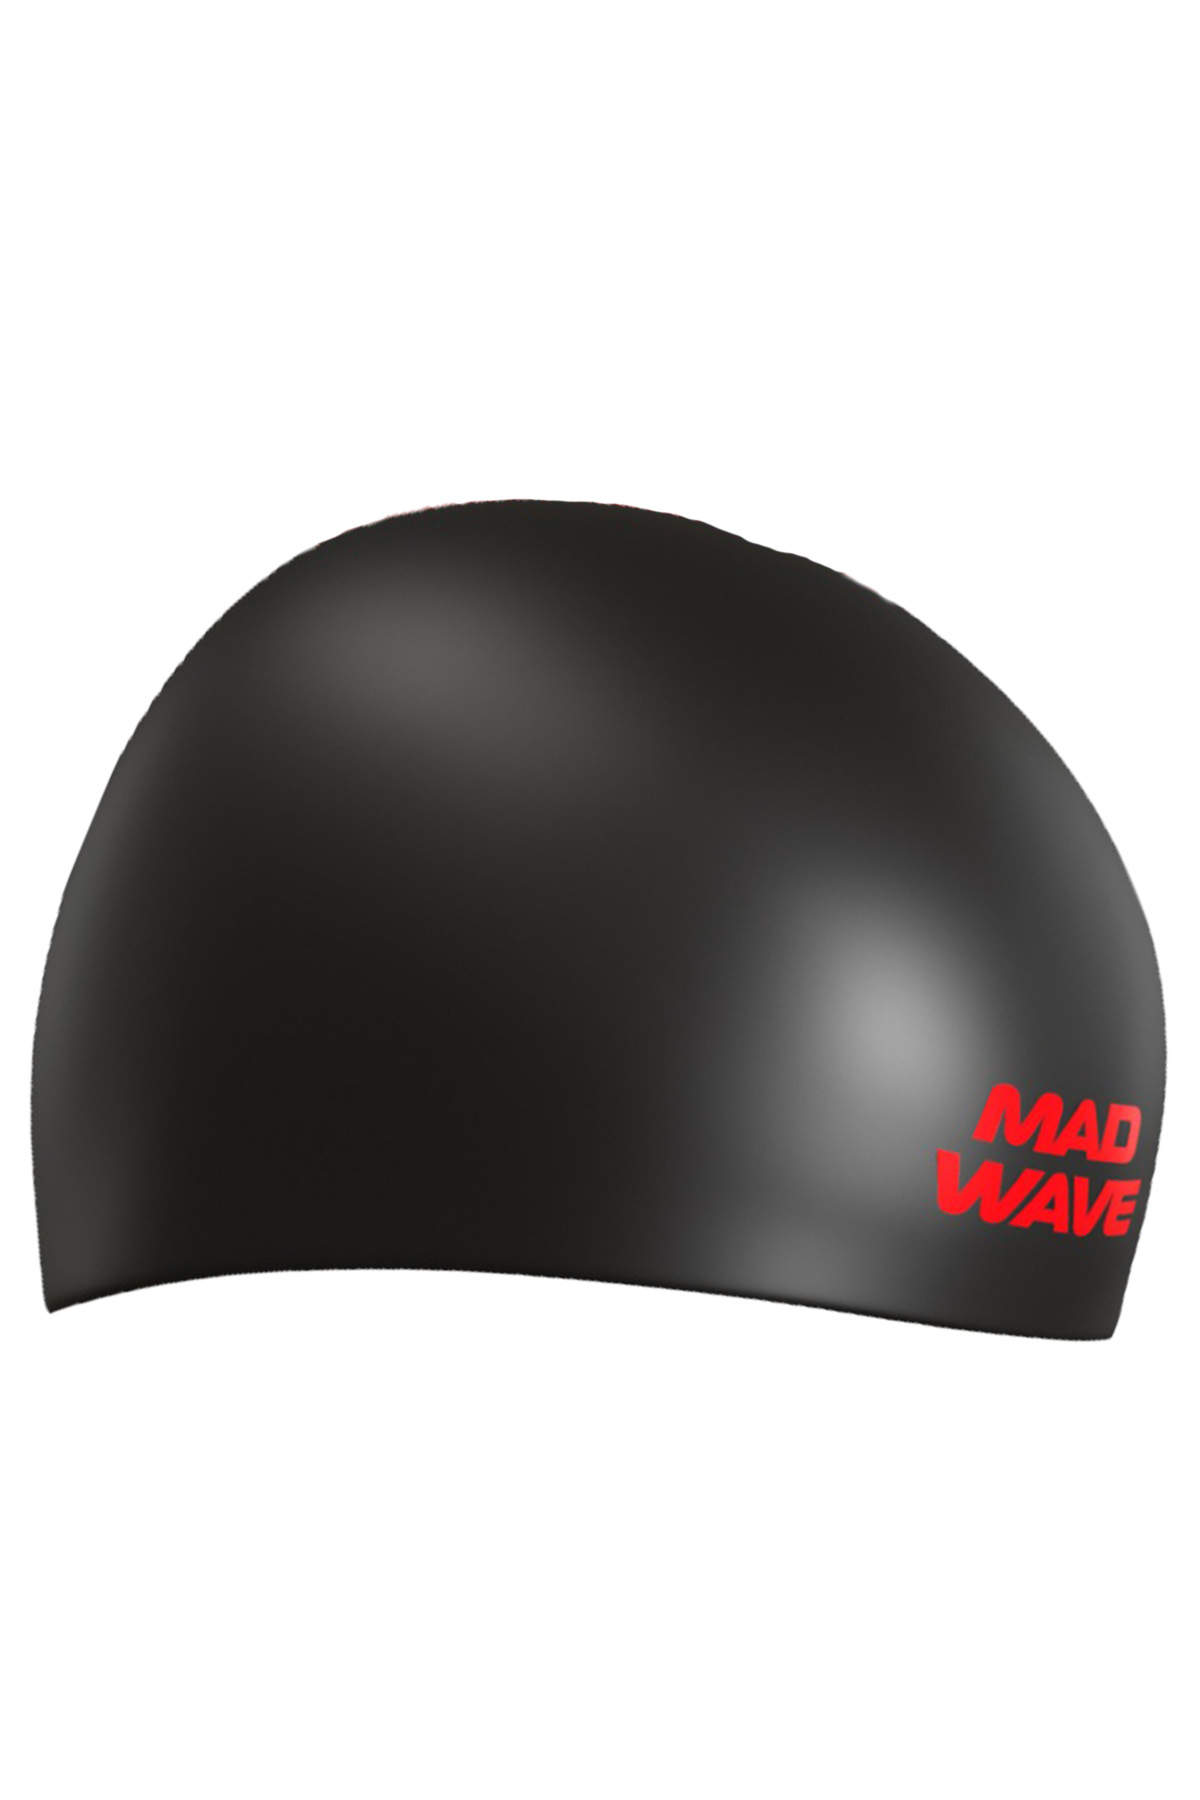 Mad wave Çift Taraflı Silikon  Bone Kırmızı - Siyah